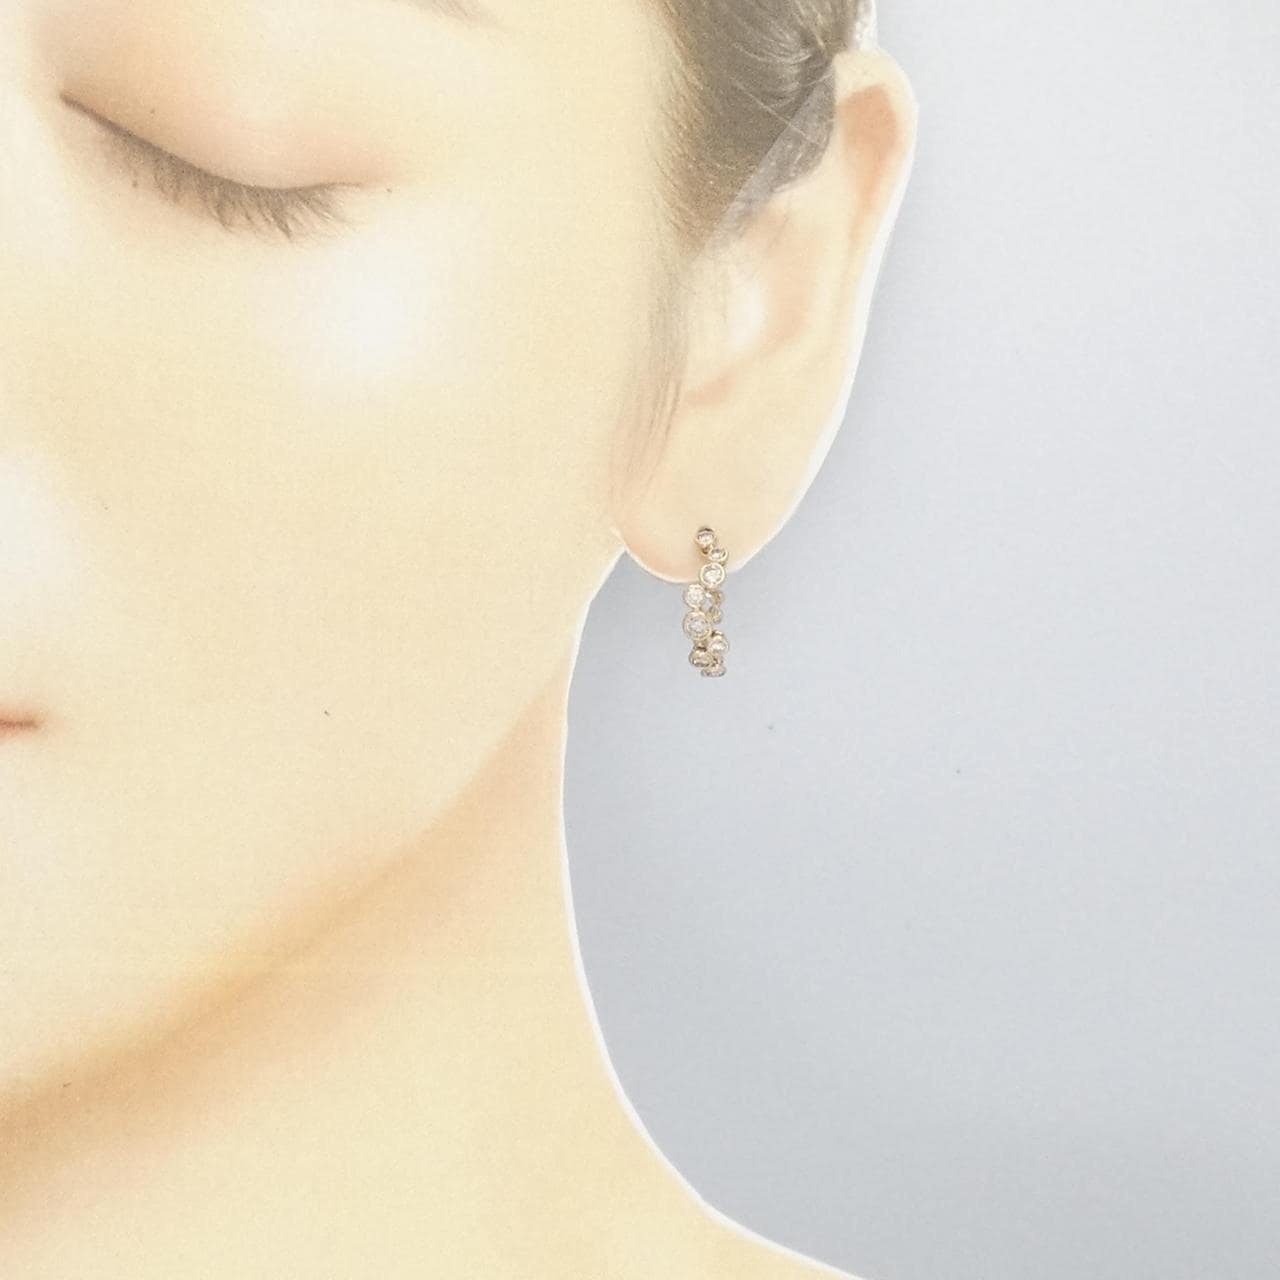 Kashikey earrings (one ear)